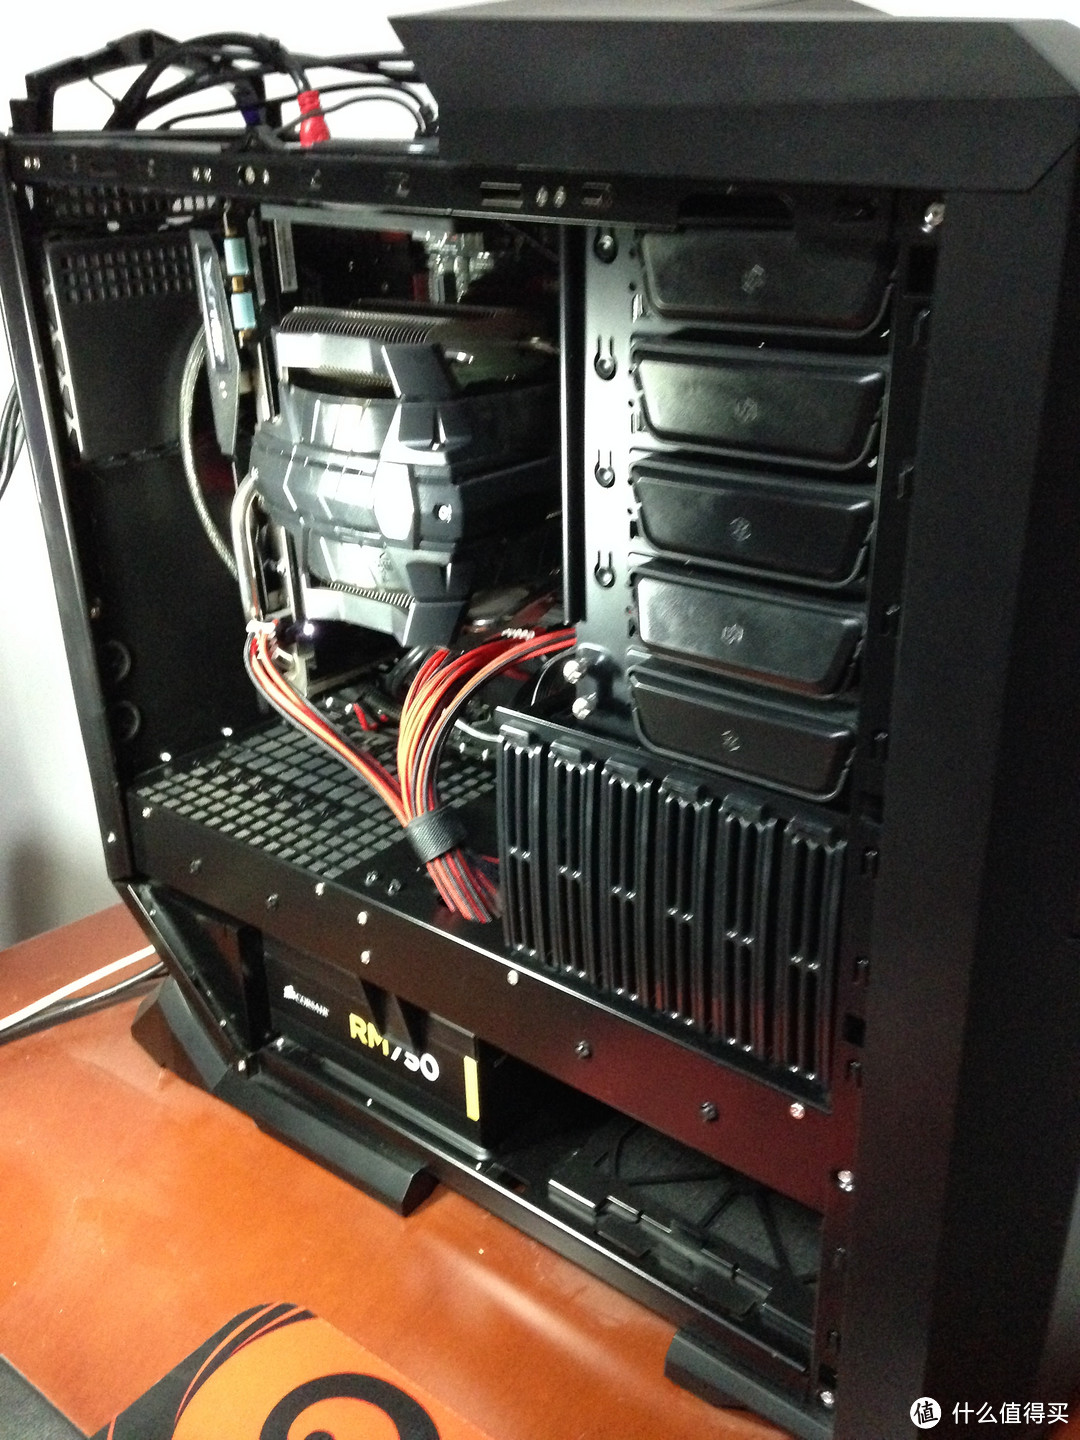 WD 西部数据 红盘 4TB 台式机硬盘选购及检测过程